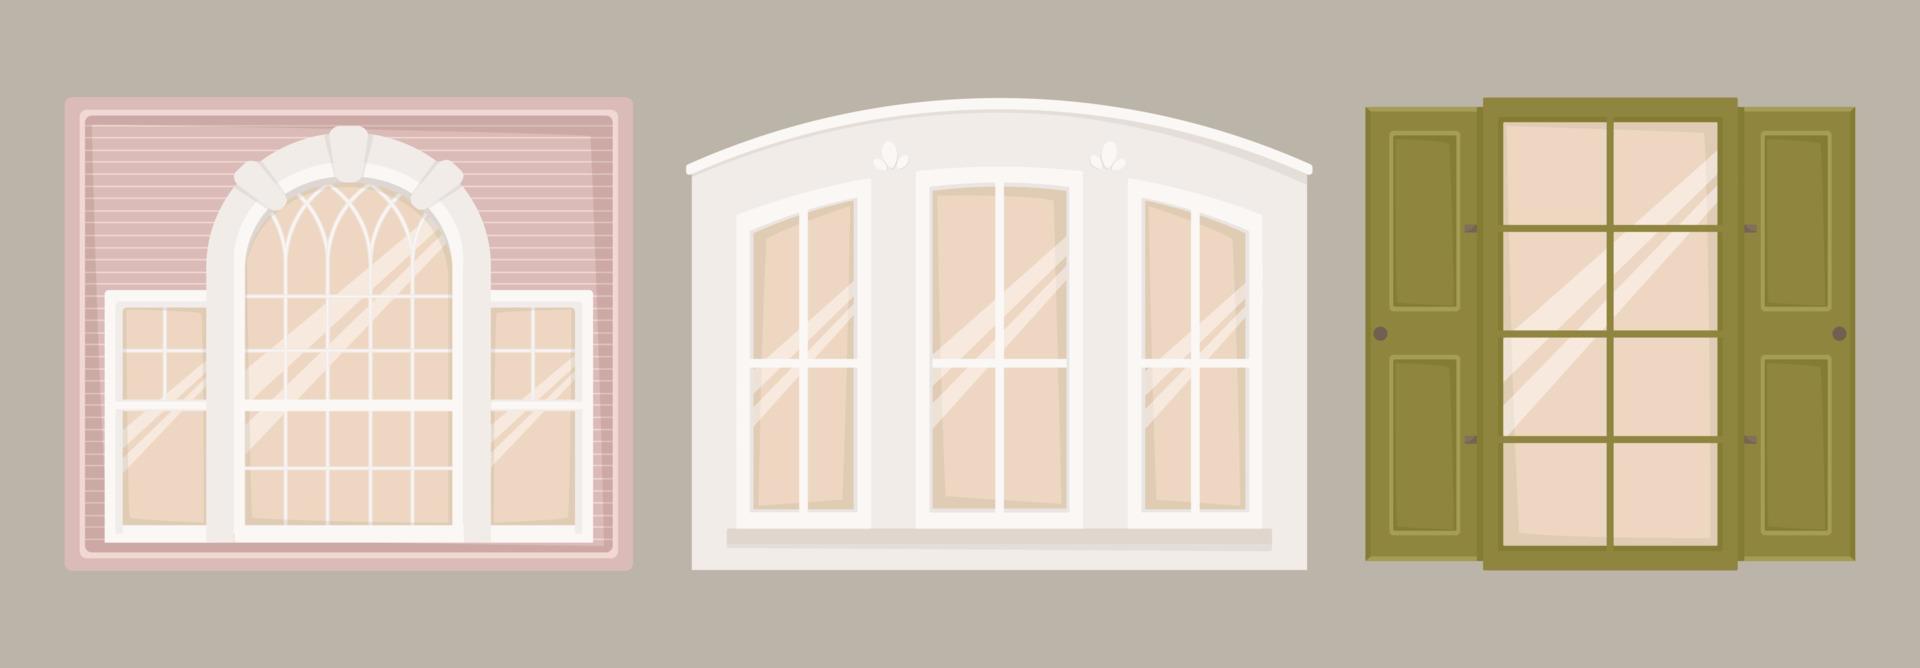 Vektor-Illustration-Satz von architektonischen Bildern. Fenster in verschiedenen Formen und Größen im klassischen Stil. Äußeres und Dekor von Gebäuden. vektor